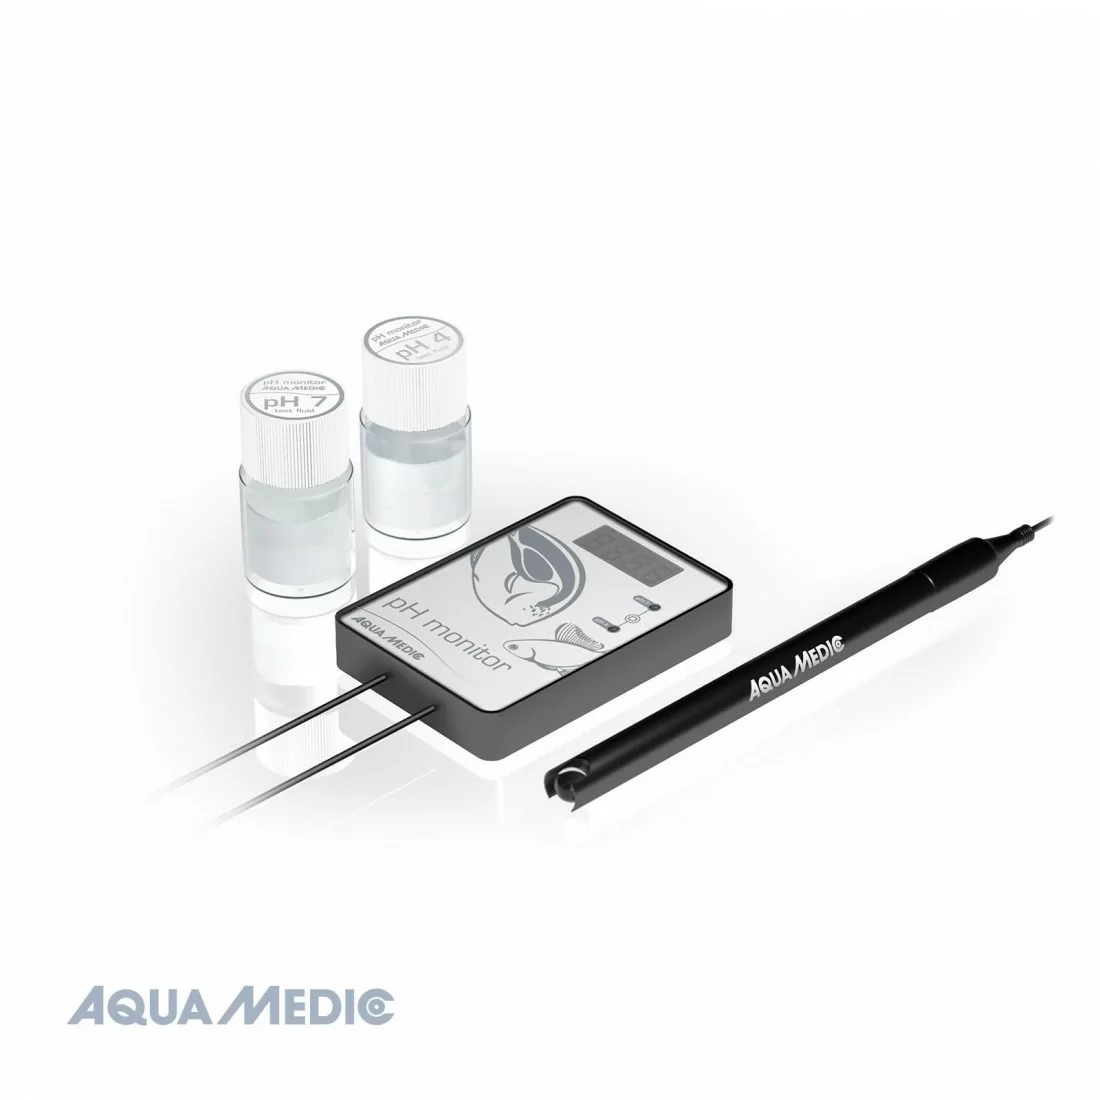 pH monitor Aqua Medic